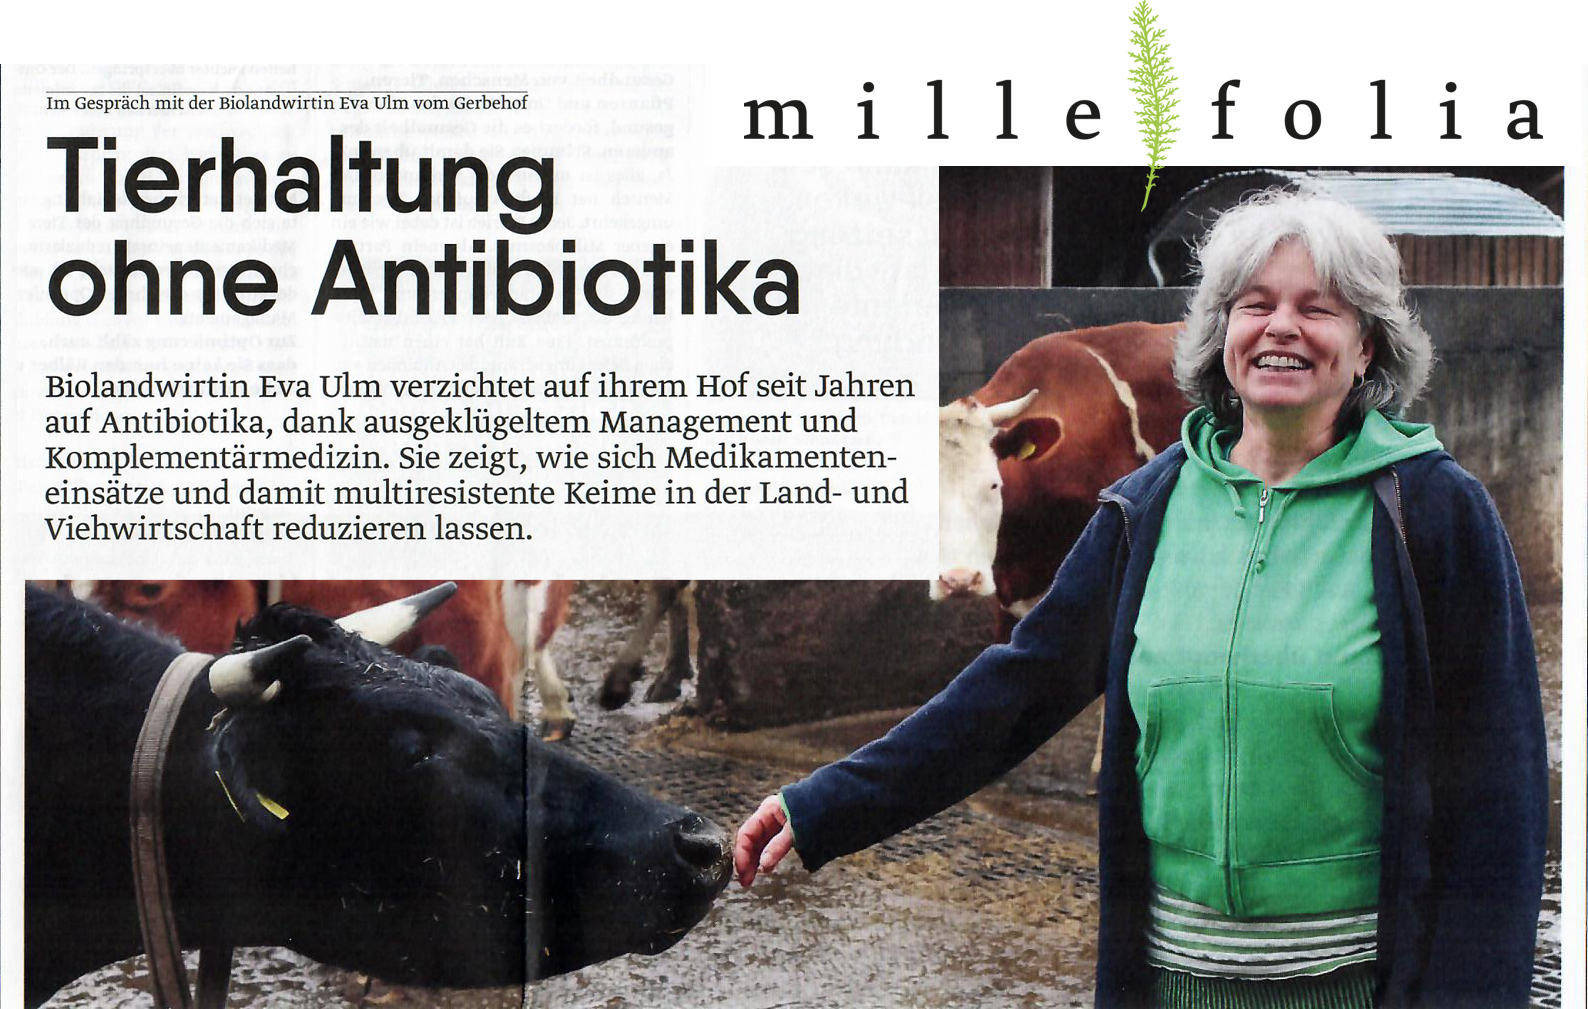 Interview mit Biolandwirtin Eva Ulm über Tierhaltung und Antibiotika für Millefolia